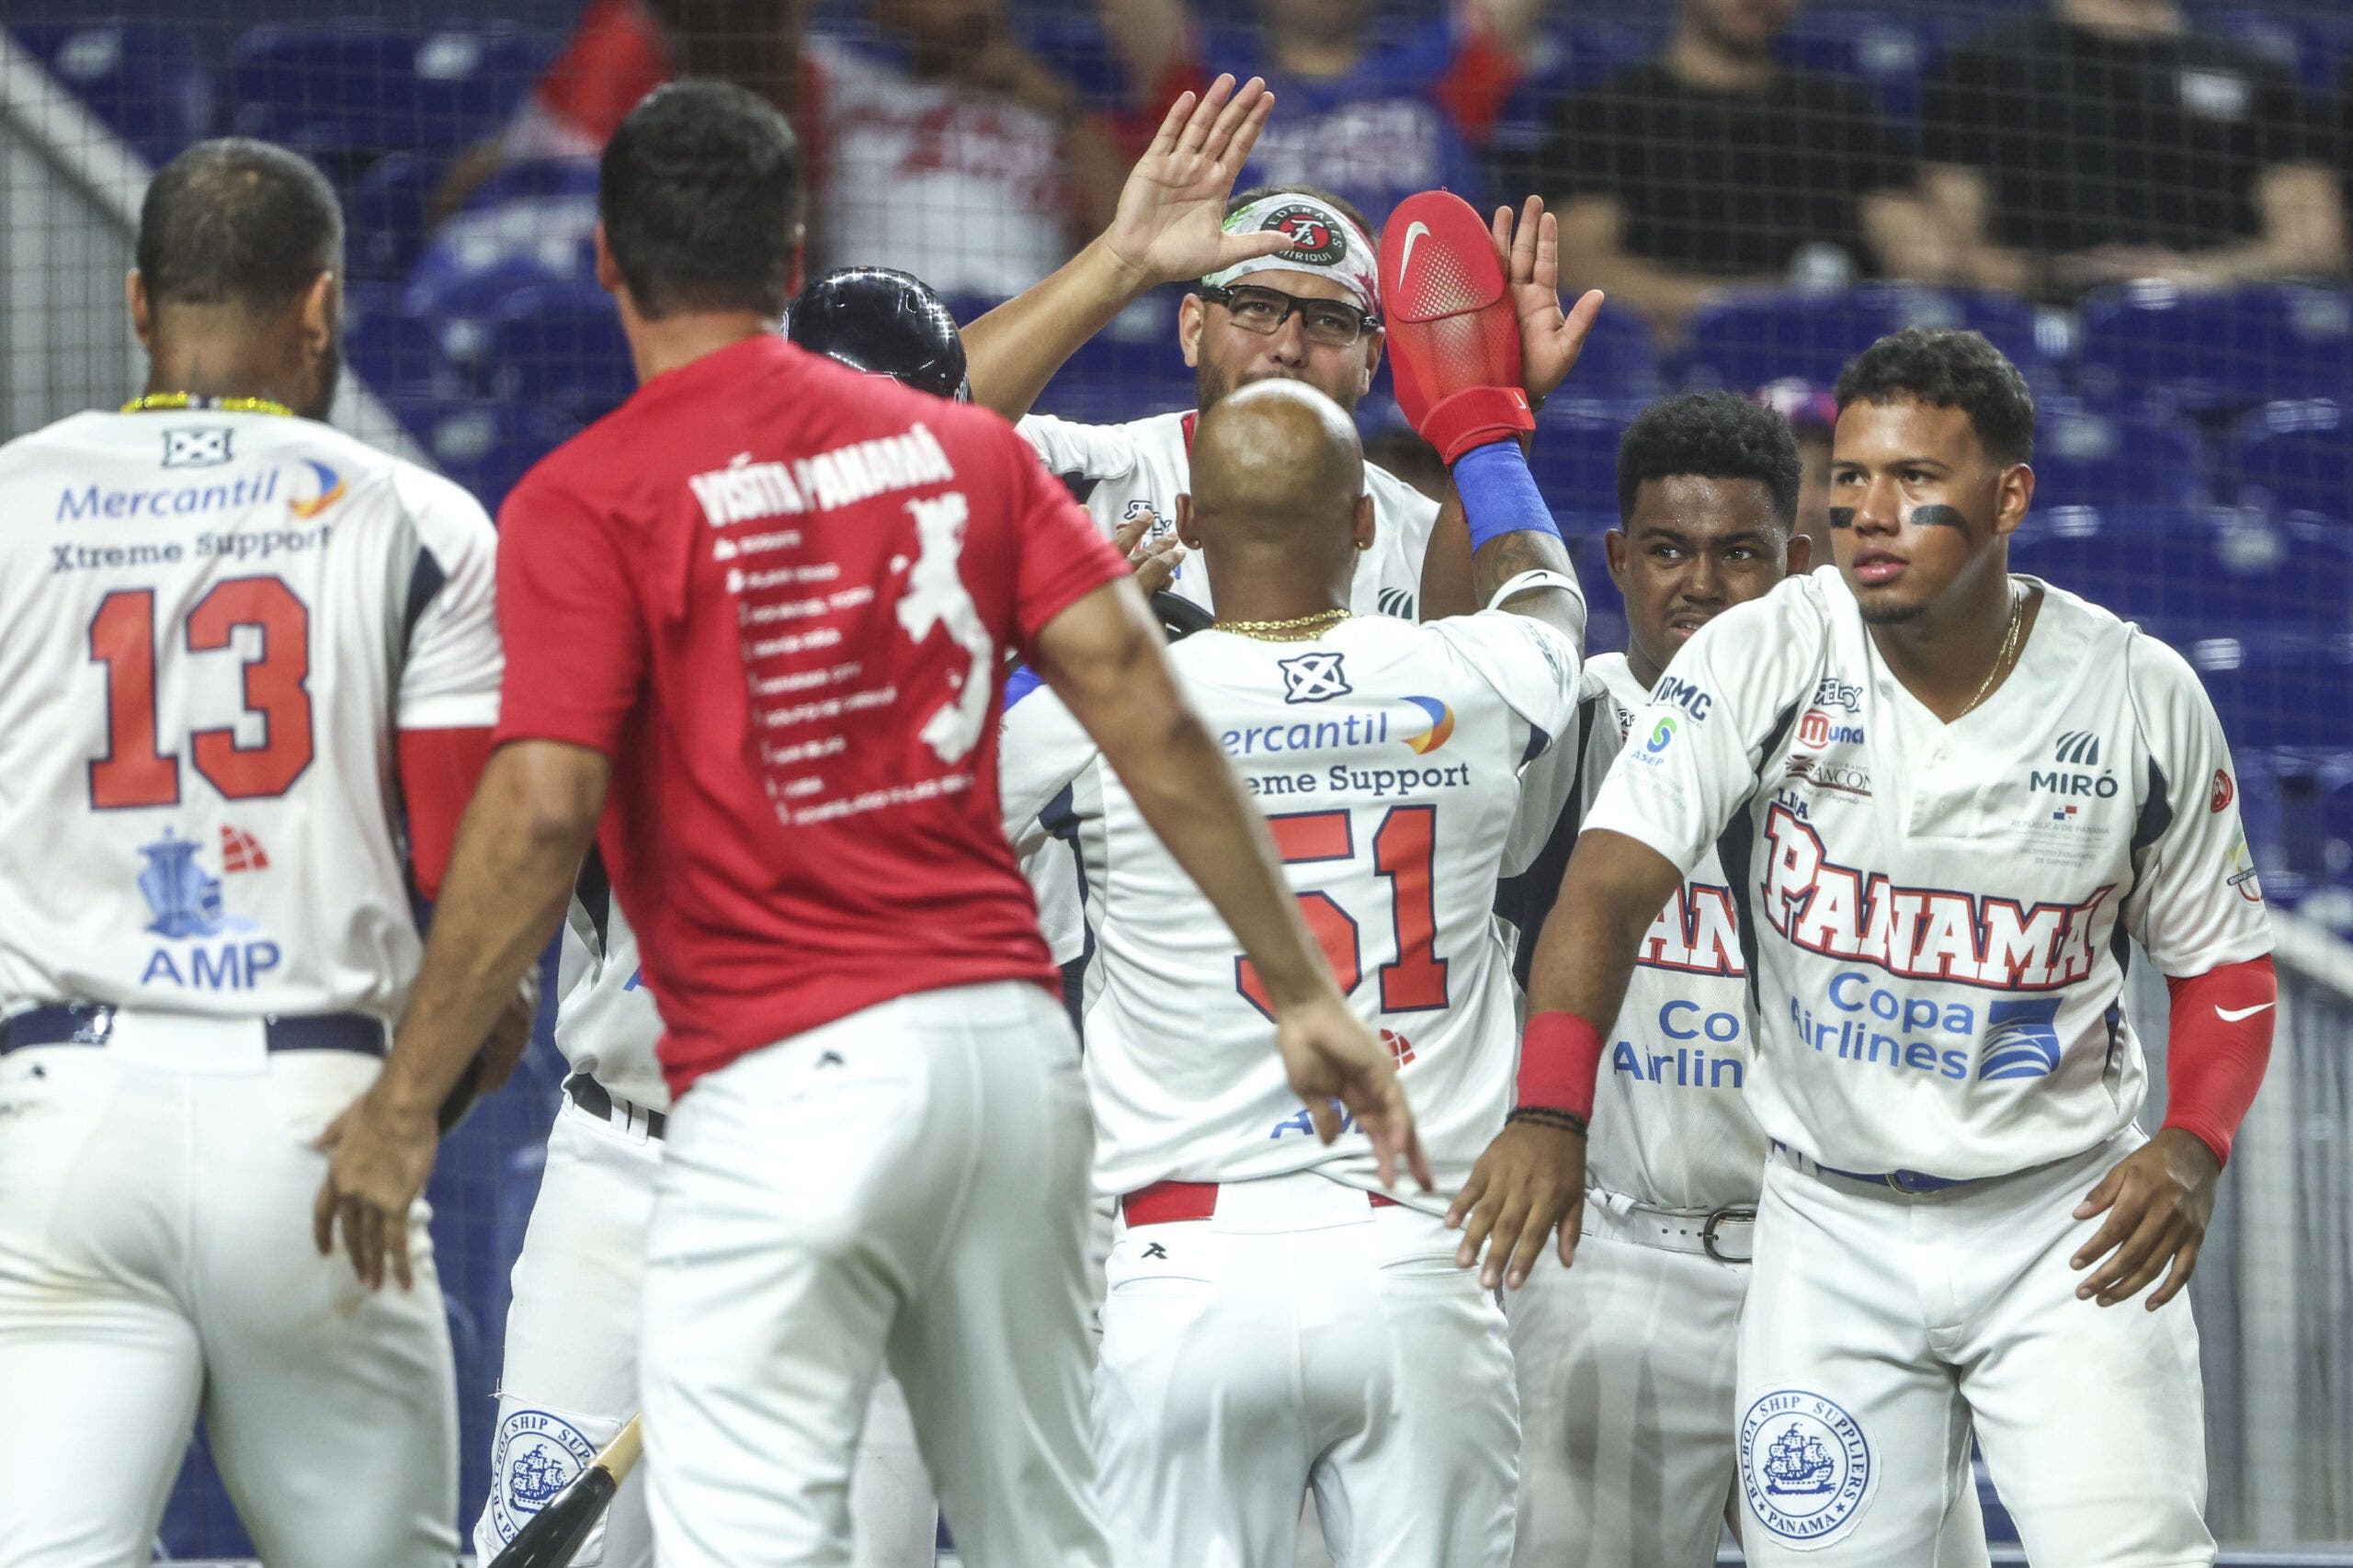 Serie del Caribe: Panamá vence 9-7 a Puerto Rico y avanzan a semifinal